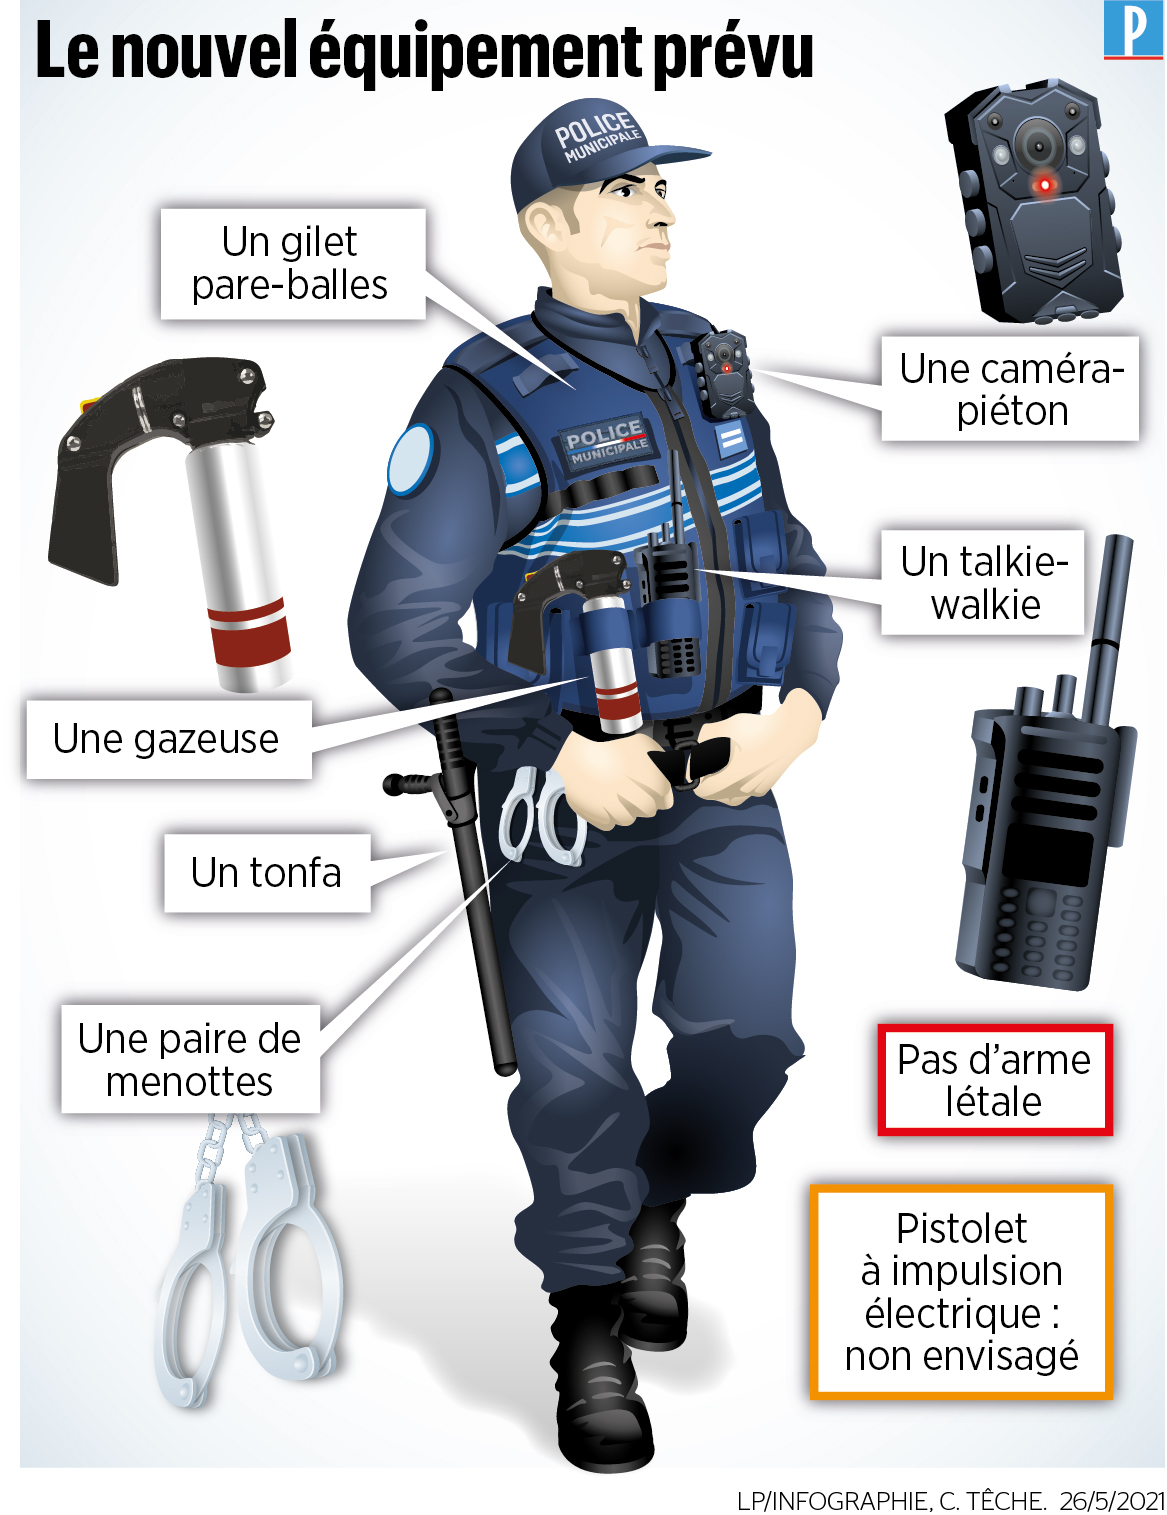 Police municipale - La Ferté Bernard